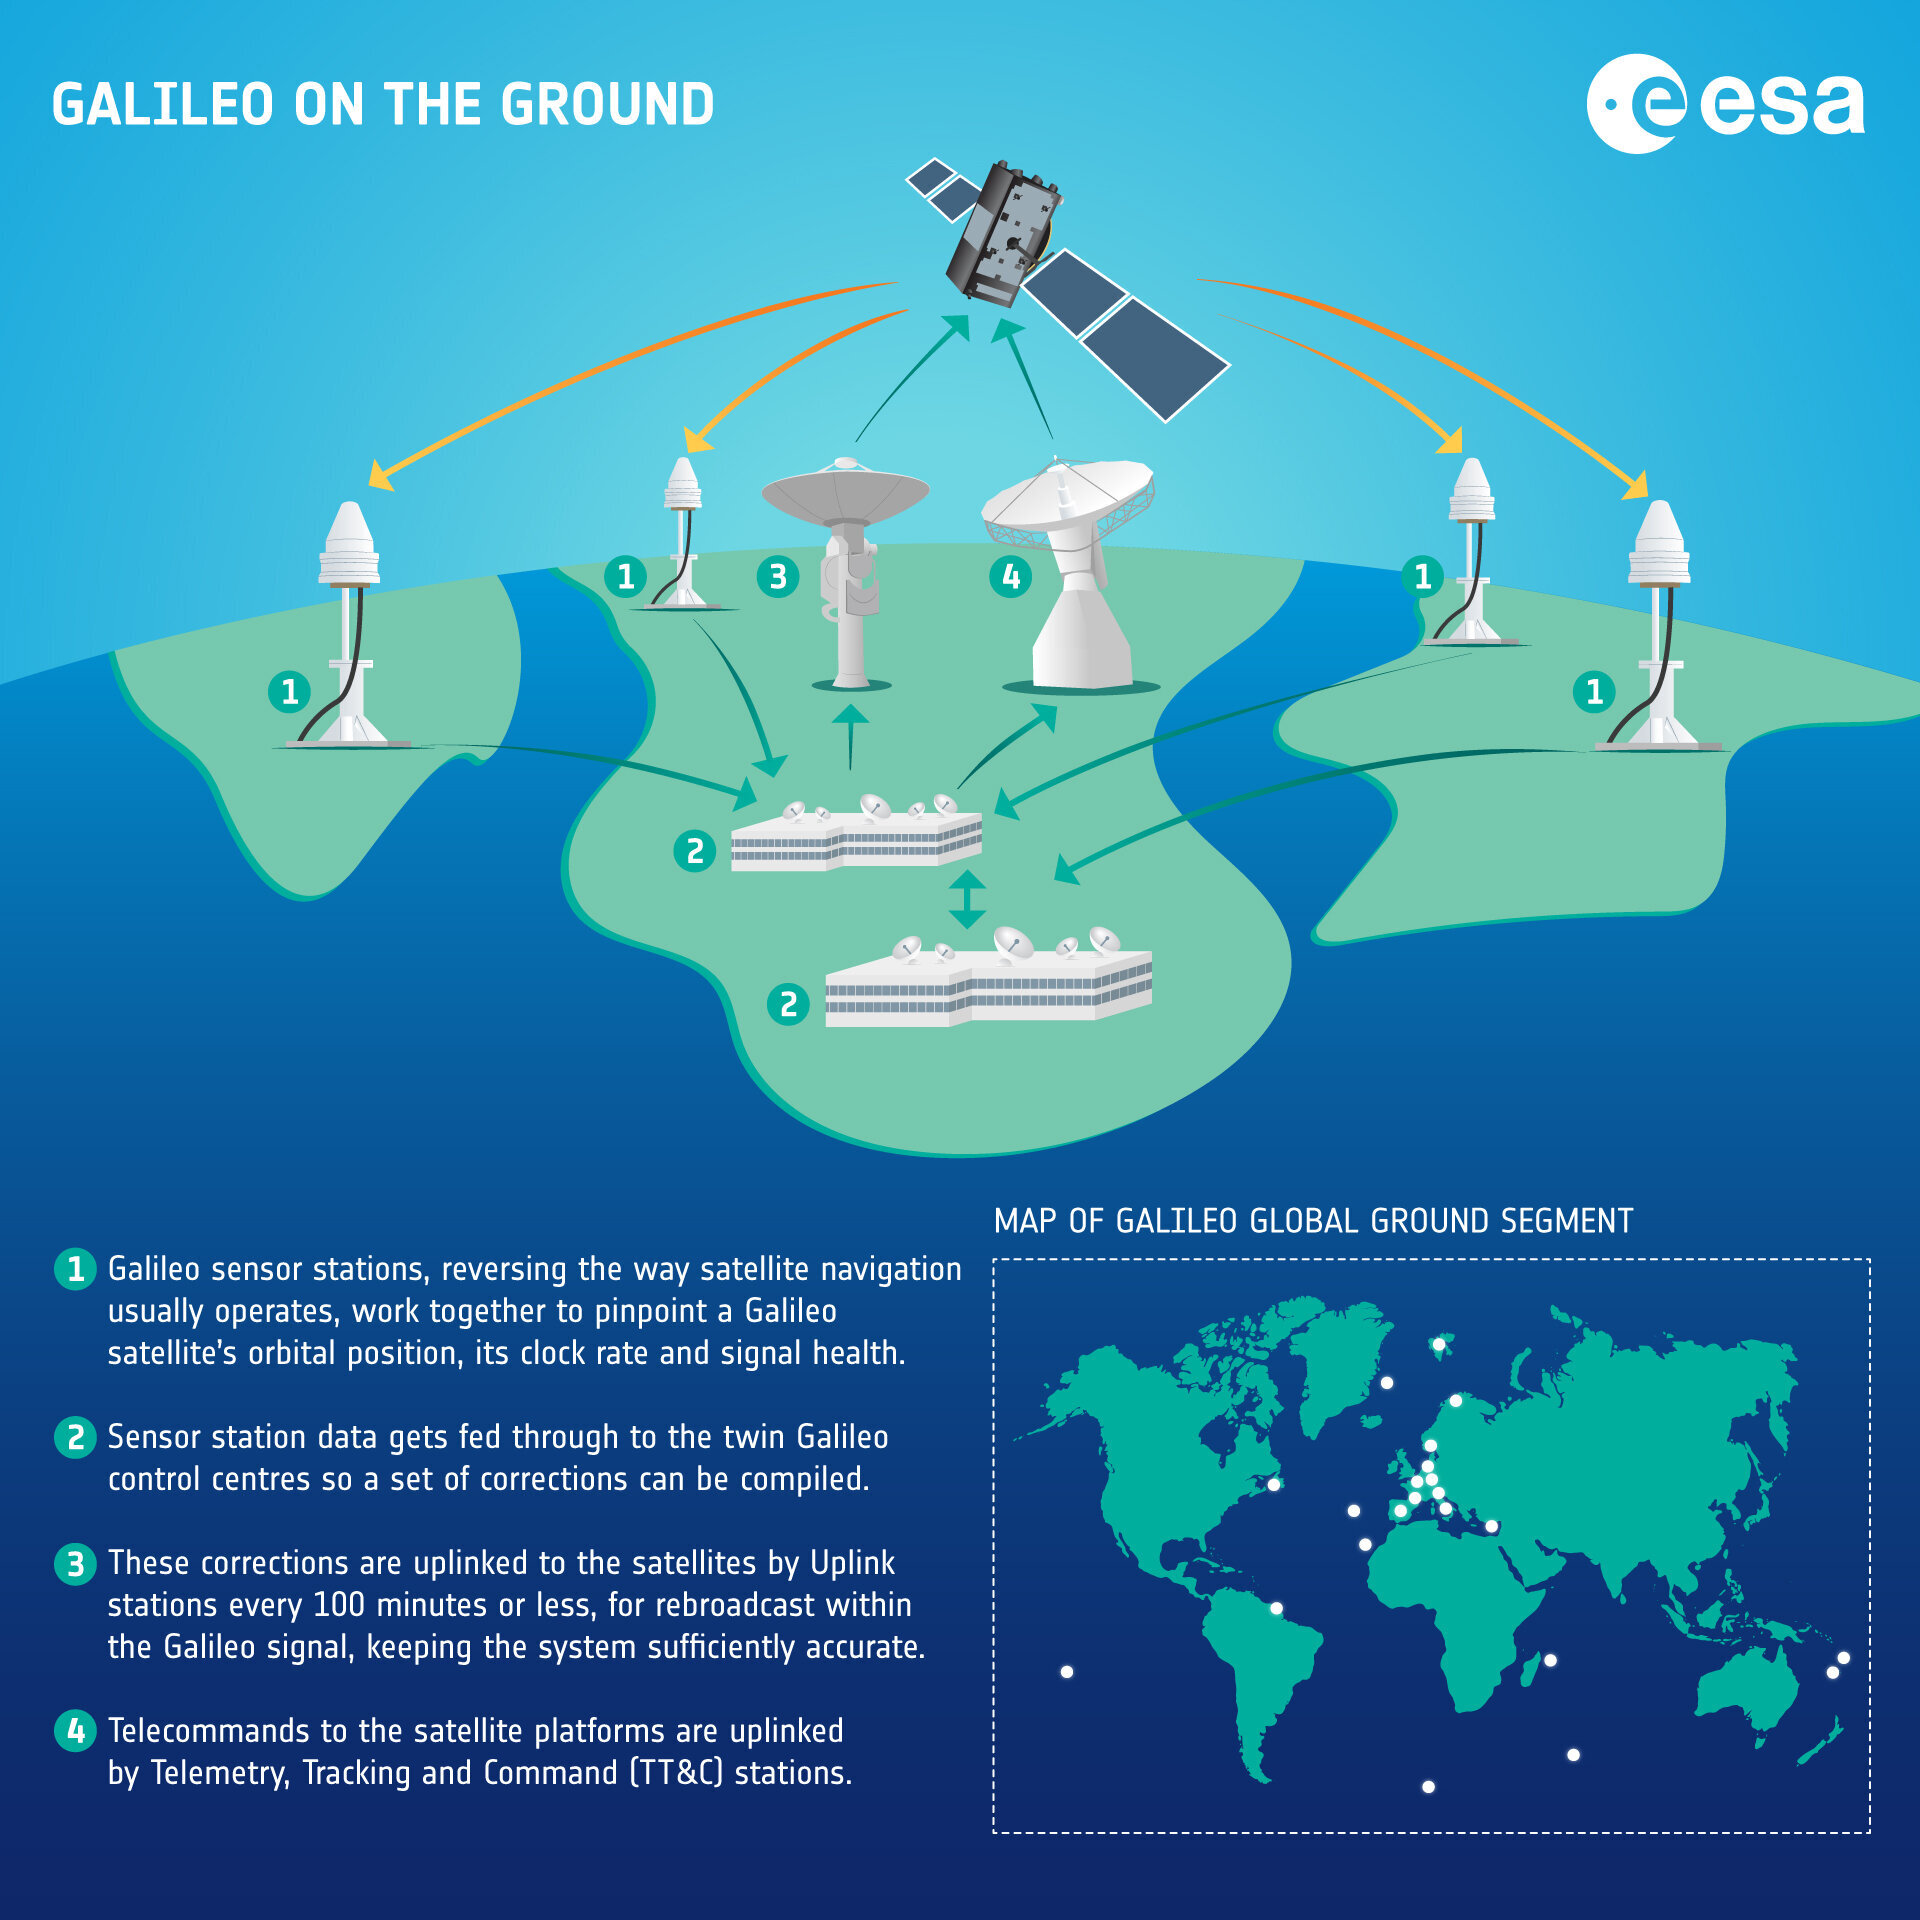 Galileo Ground Segment in a nutshell